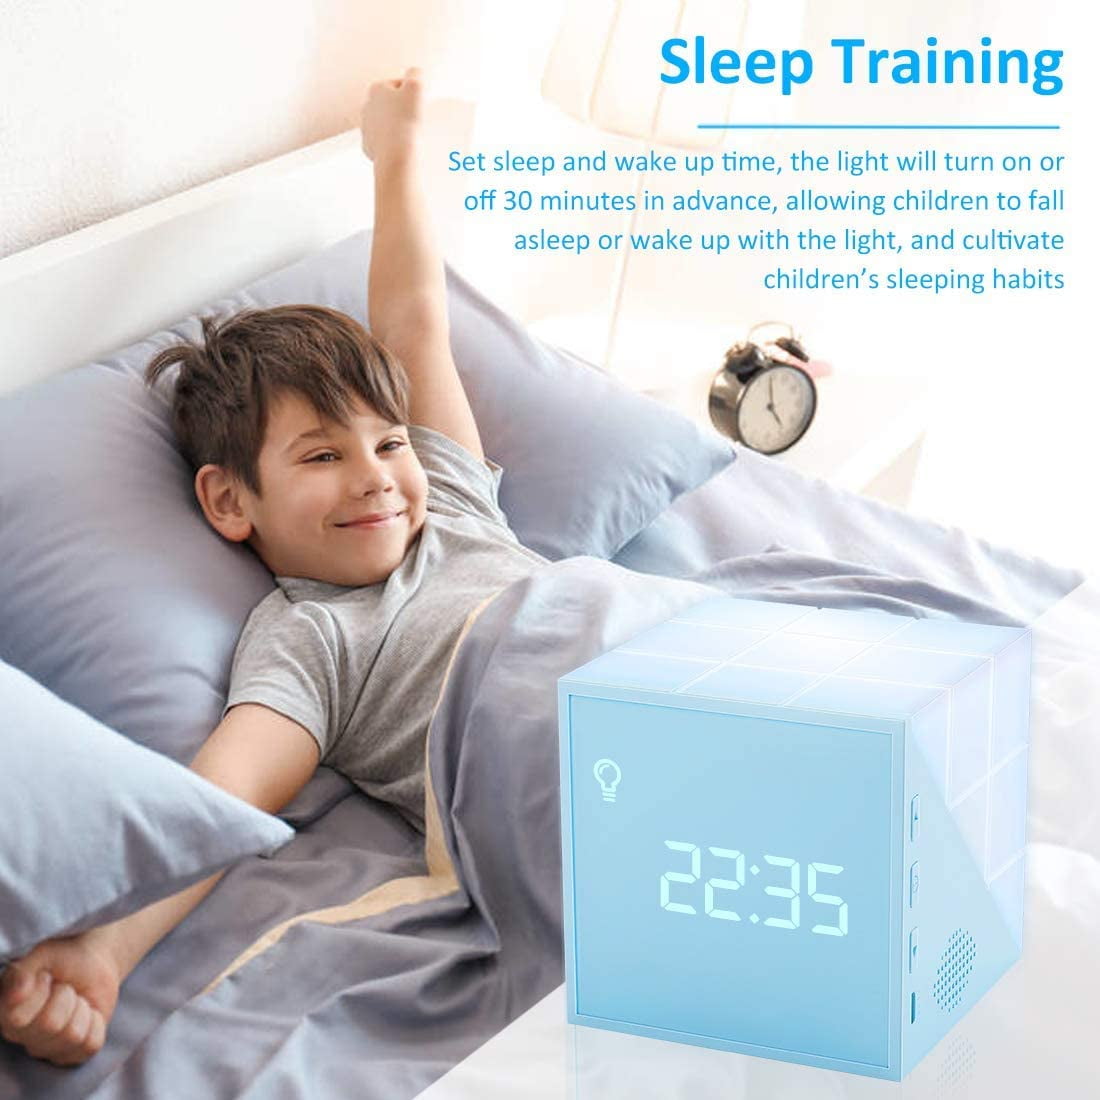 Réveil lumineux pour enfants Creative Cube Wake Up Réveil pour